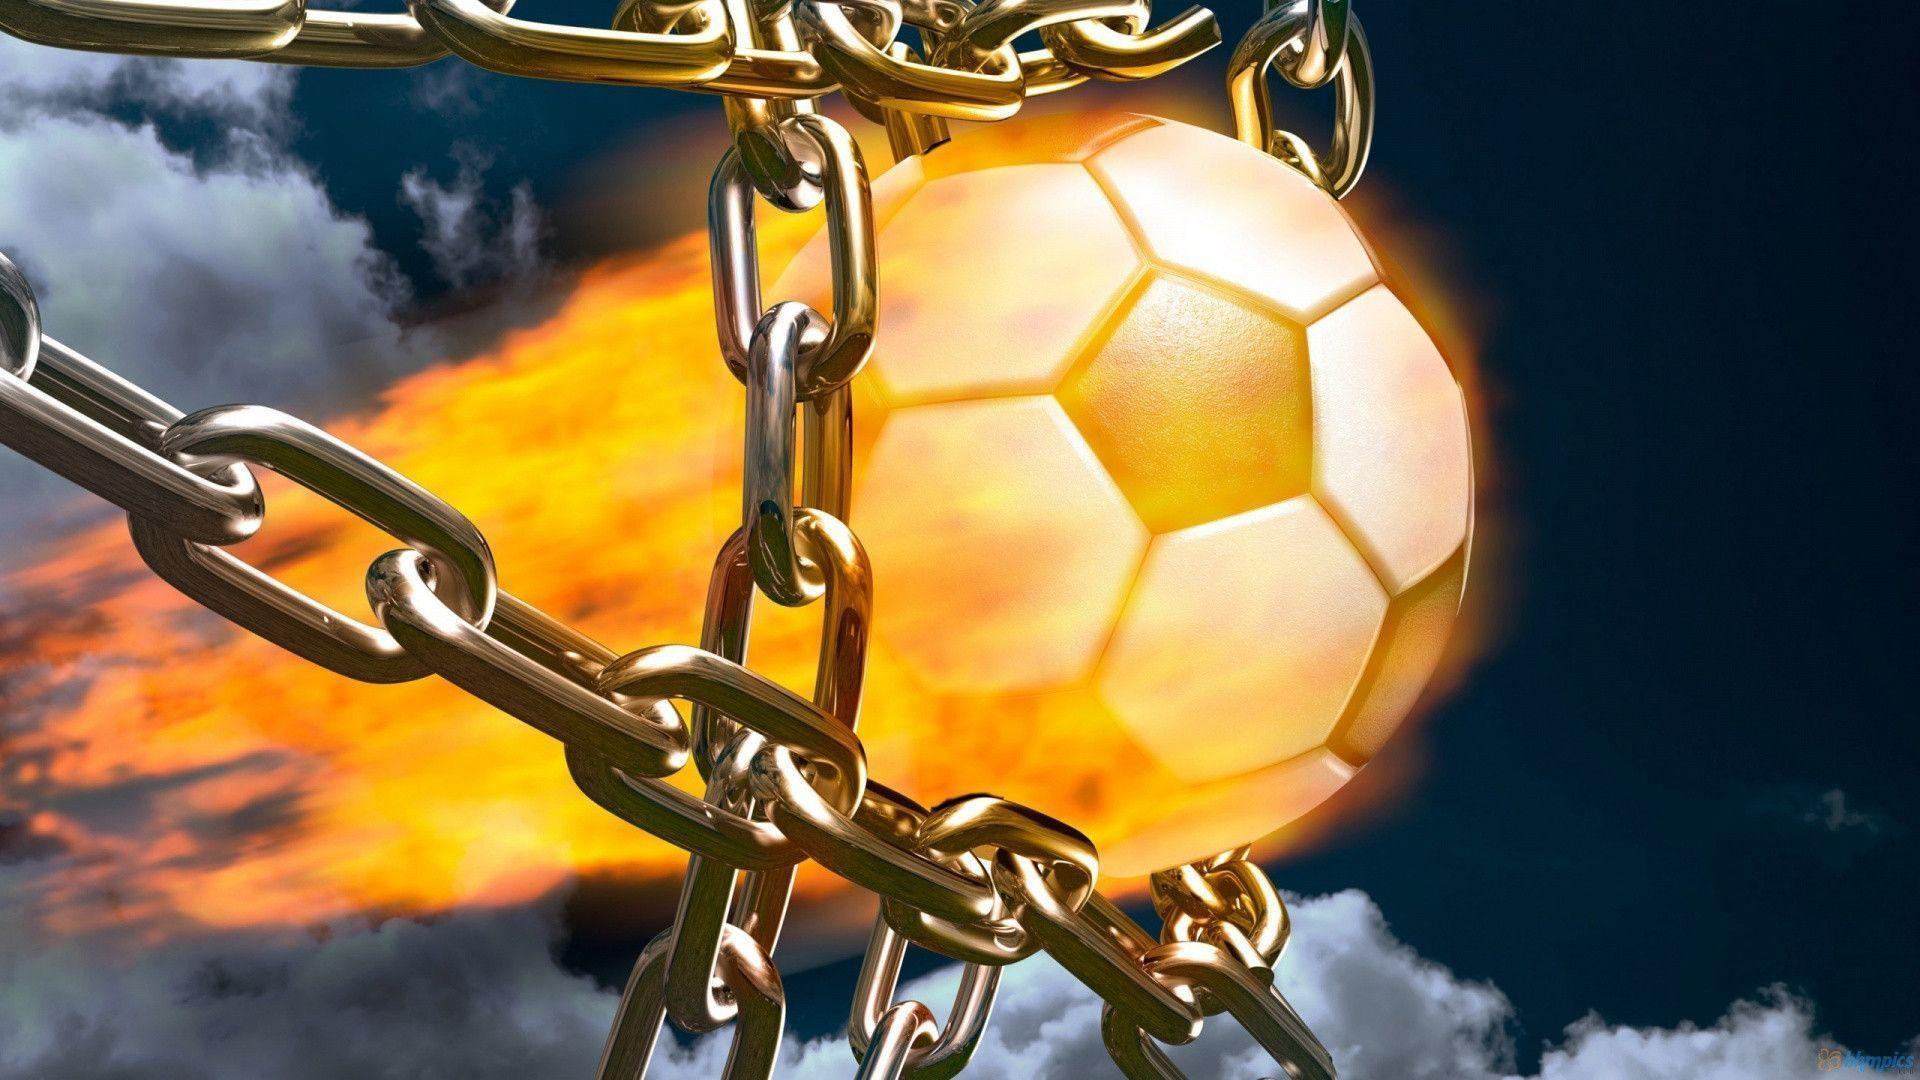 Cool Soccer Ball. Football HD Wallpaper